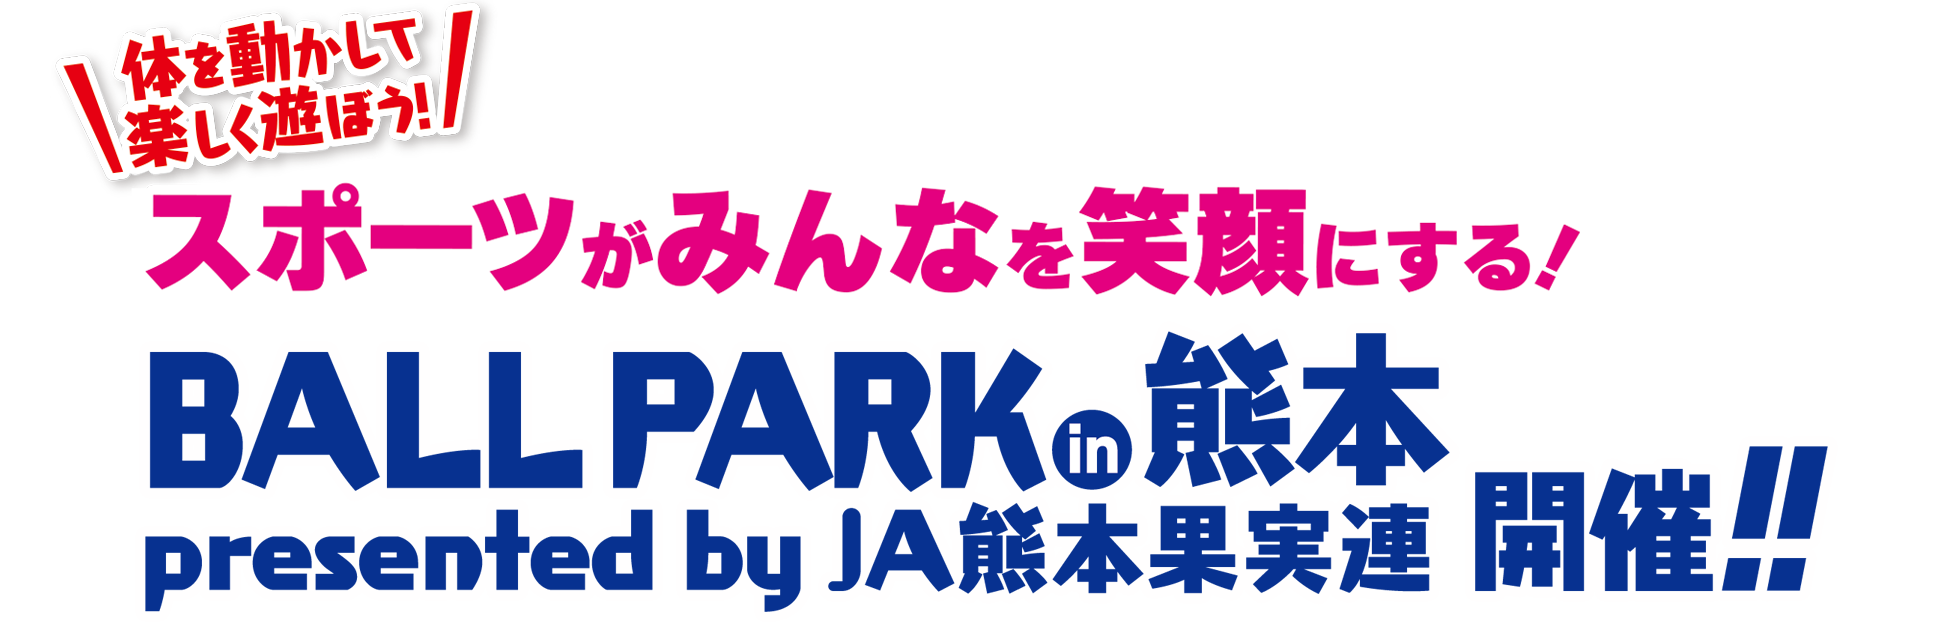 体を動かして楽しく遊ぼう！ スポーツがみんなを笑顔にする！BALLPARK in 熊本 presented by JA熊本果実連 開催